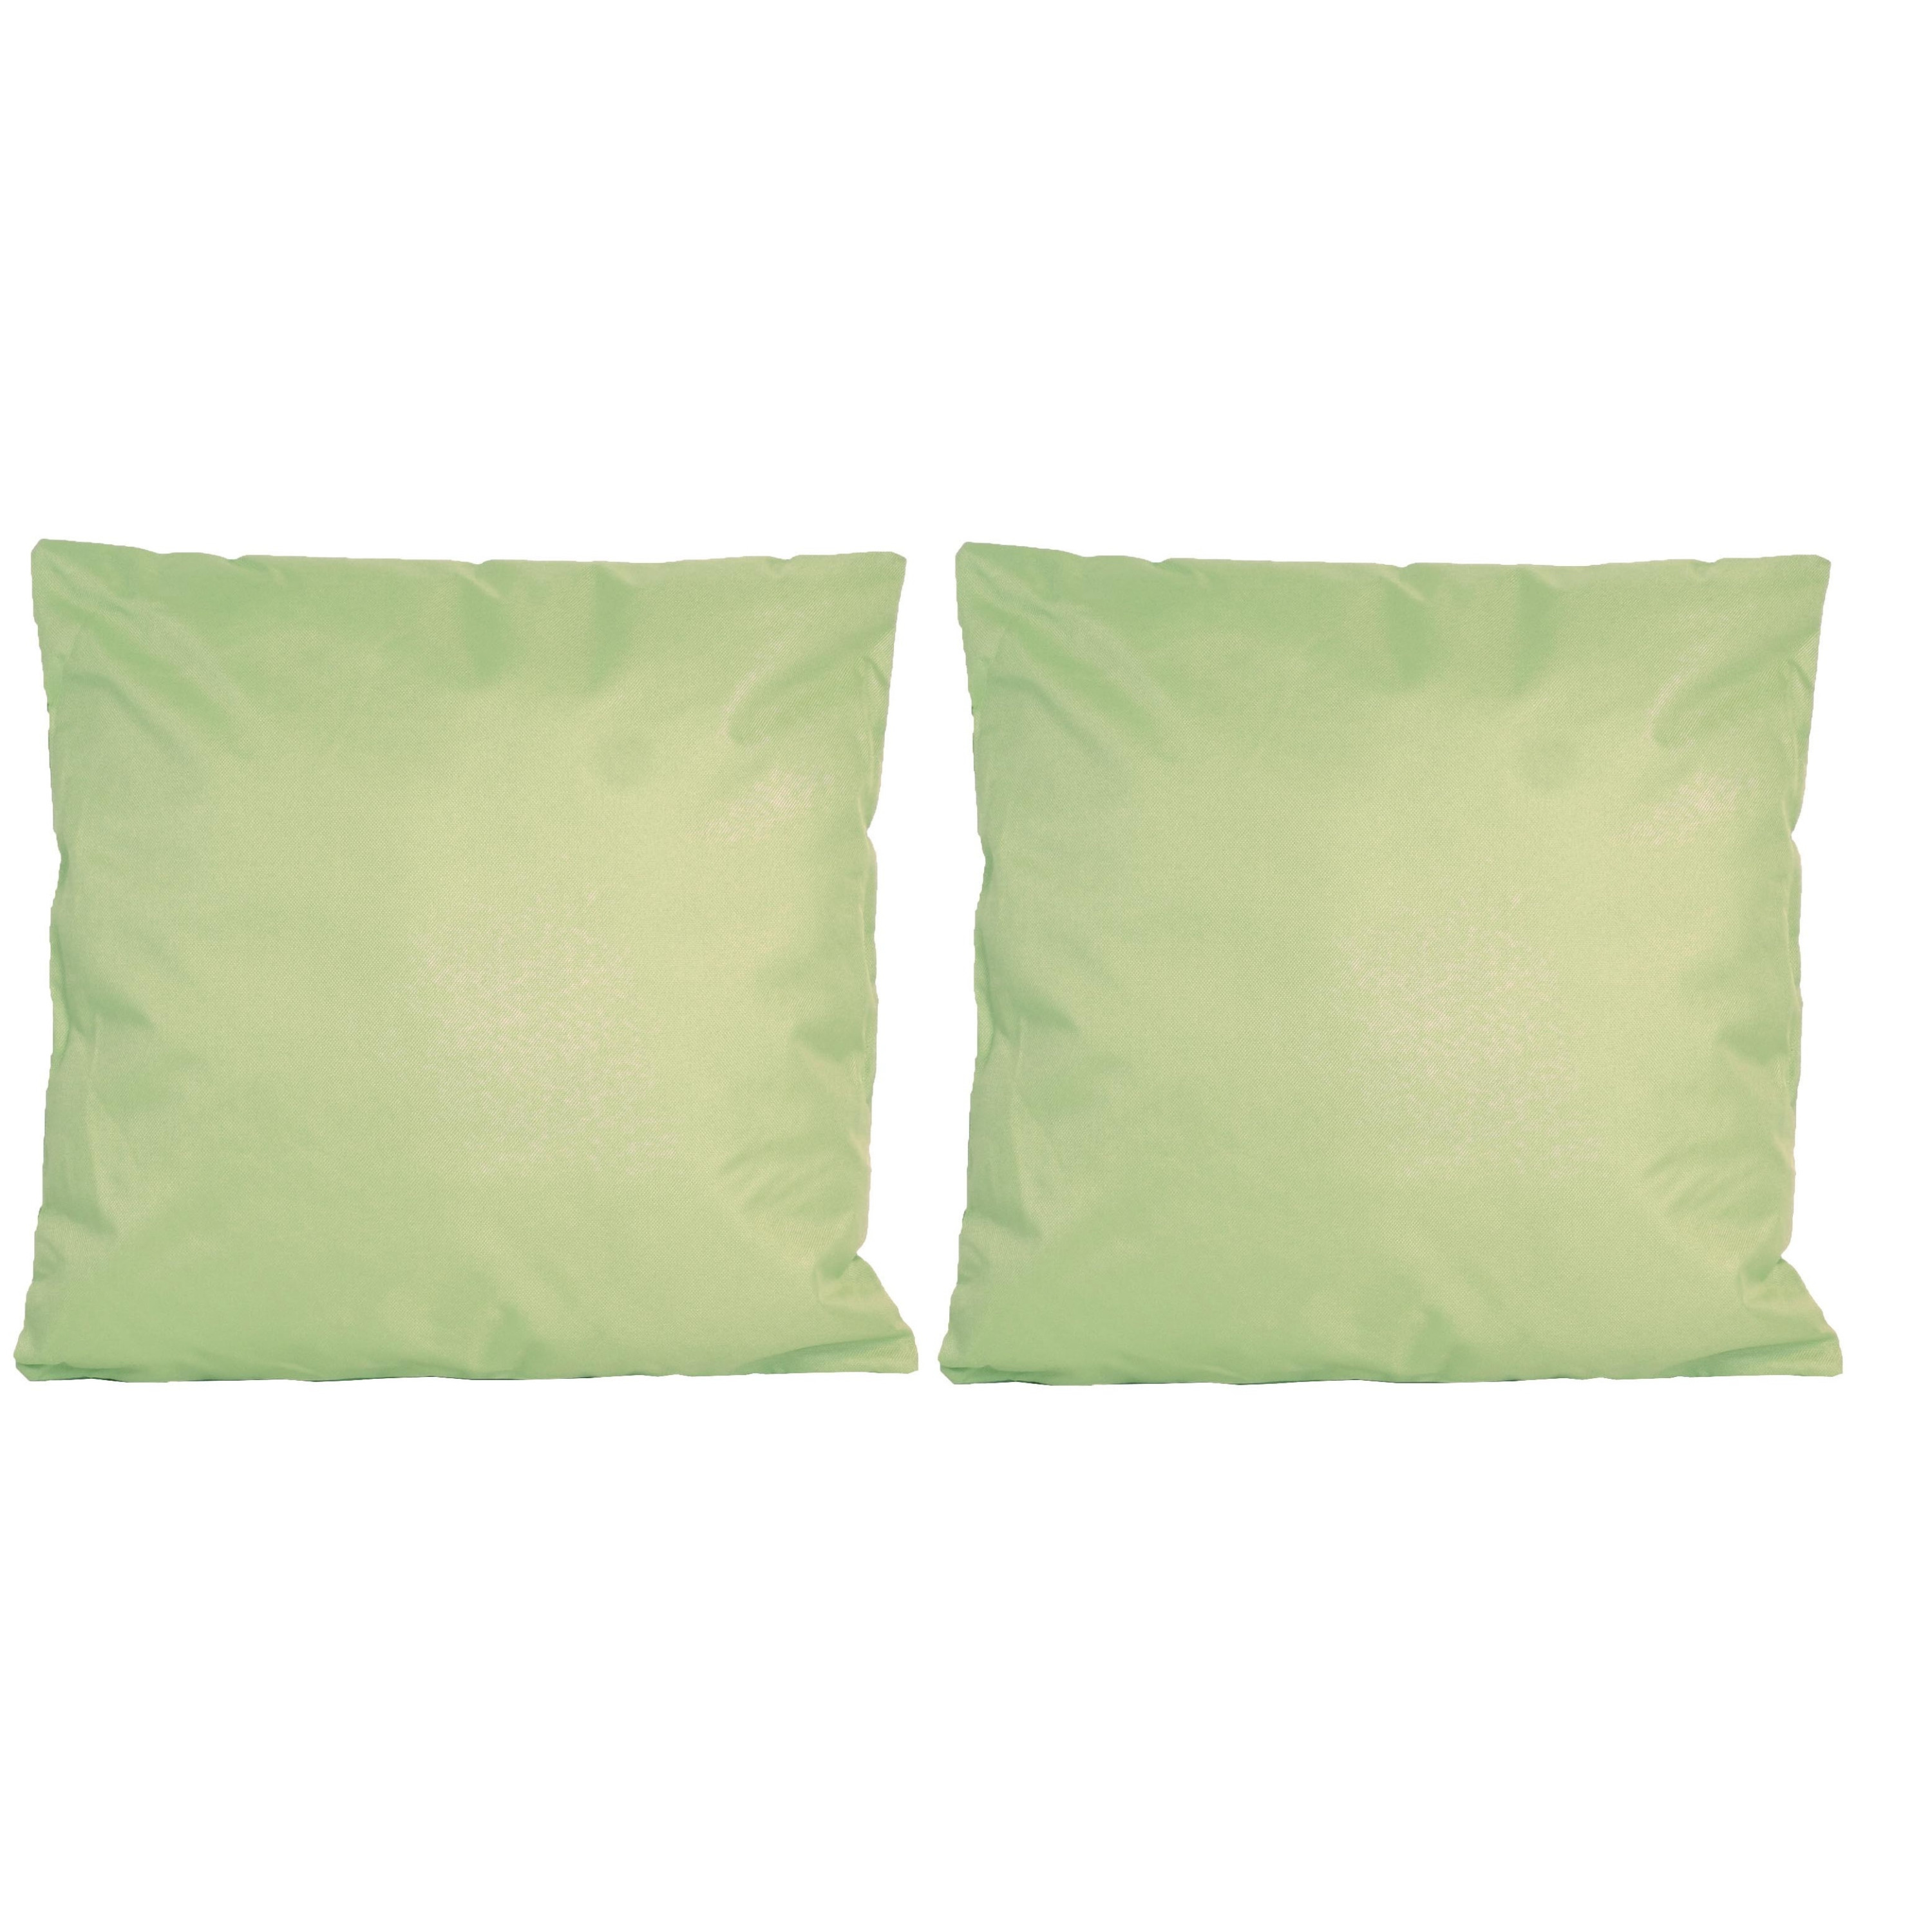 8x Bank-sier kussens voor binnen en buiten in de kleur mint groen 45 x 45 cm